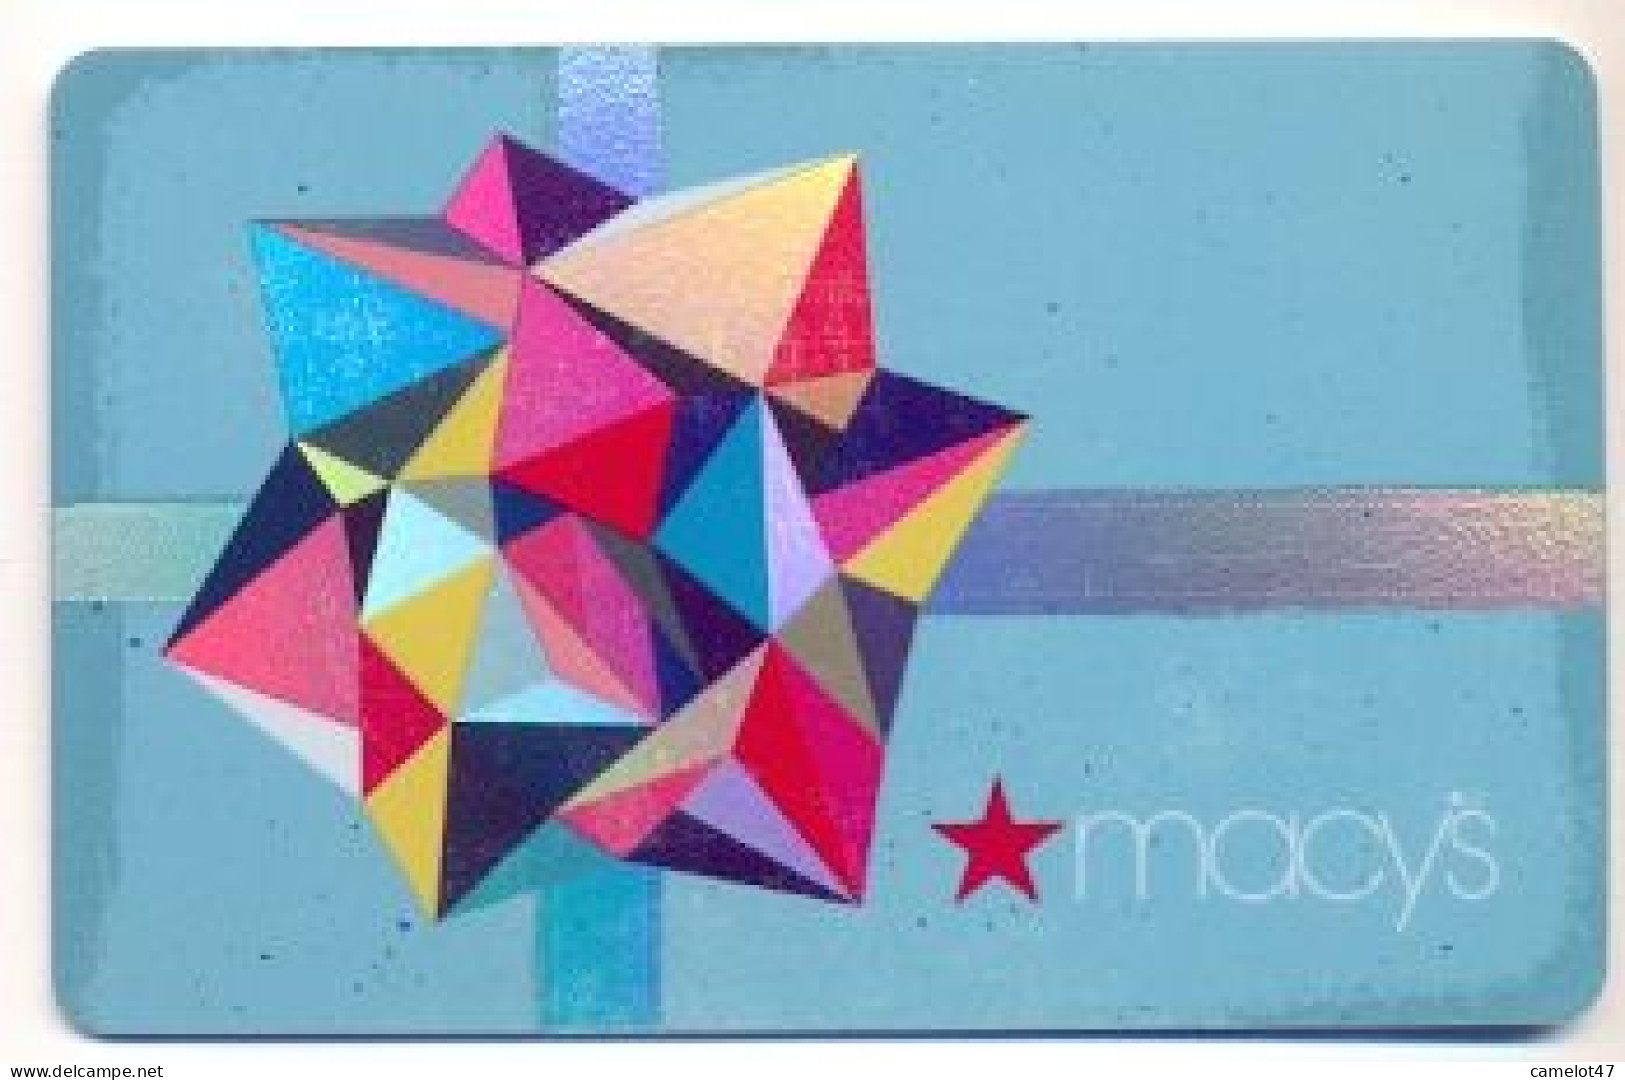 Macy's, U.S.A., Carte Cadeau Pour Collection, Sans Valeur # Macys-151 - Gift And Loyalty Cards